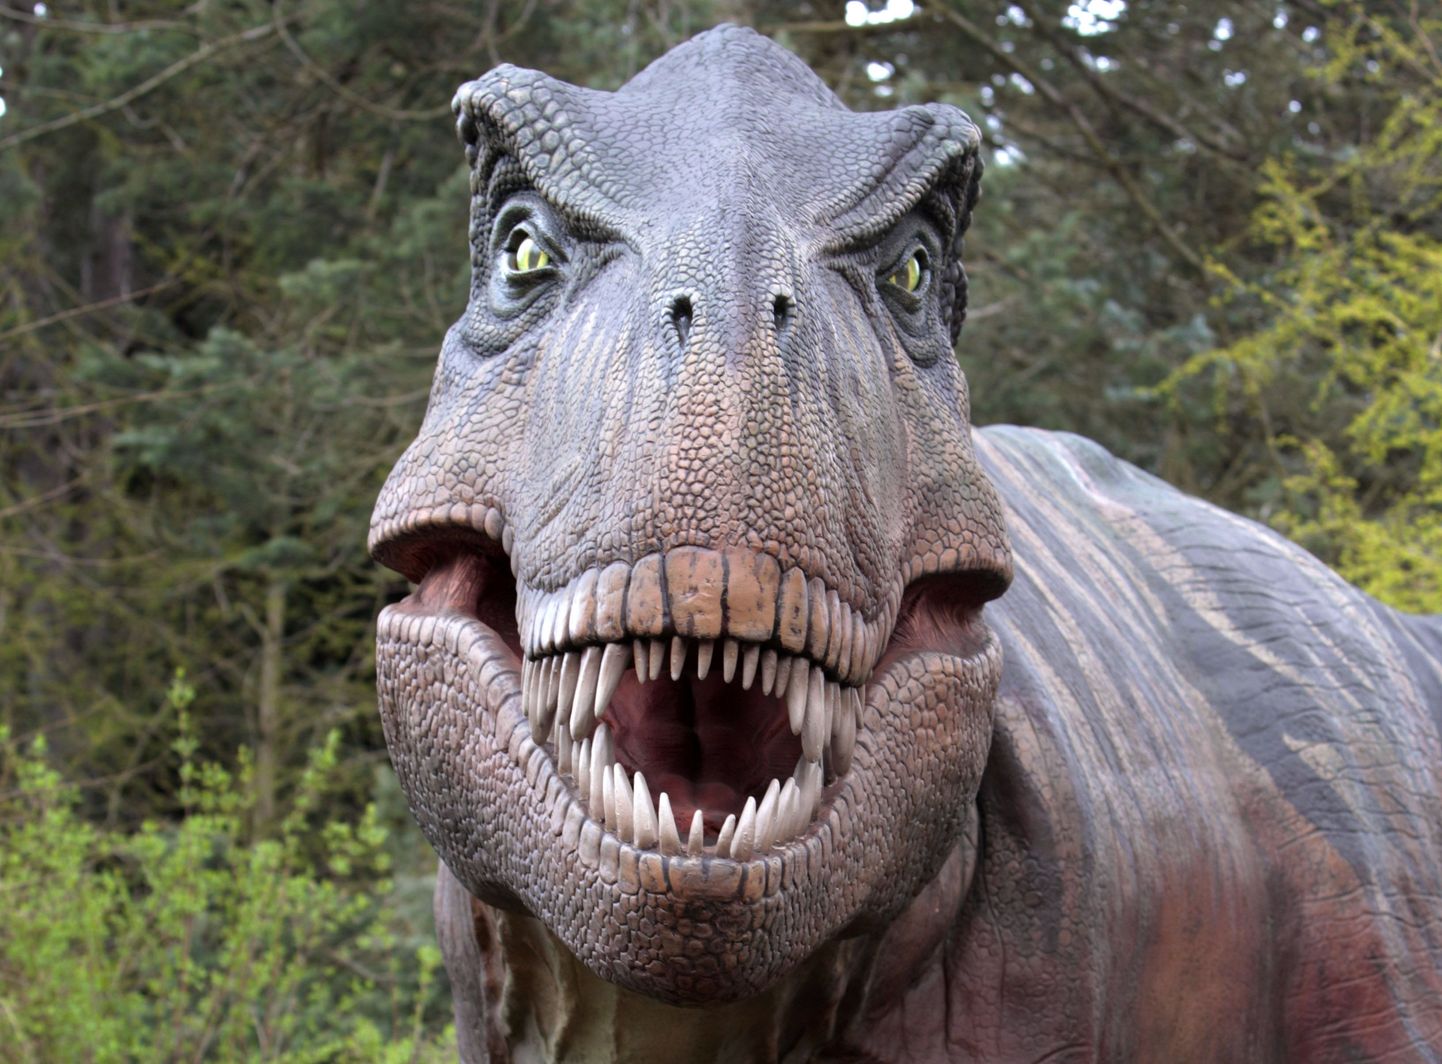 Tyrannosaurus rex.